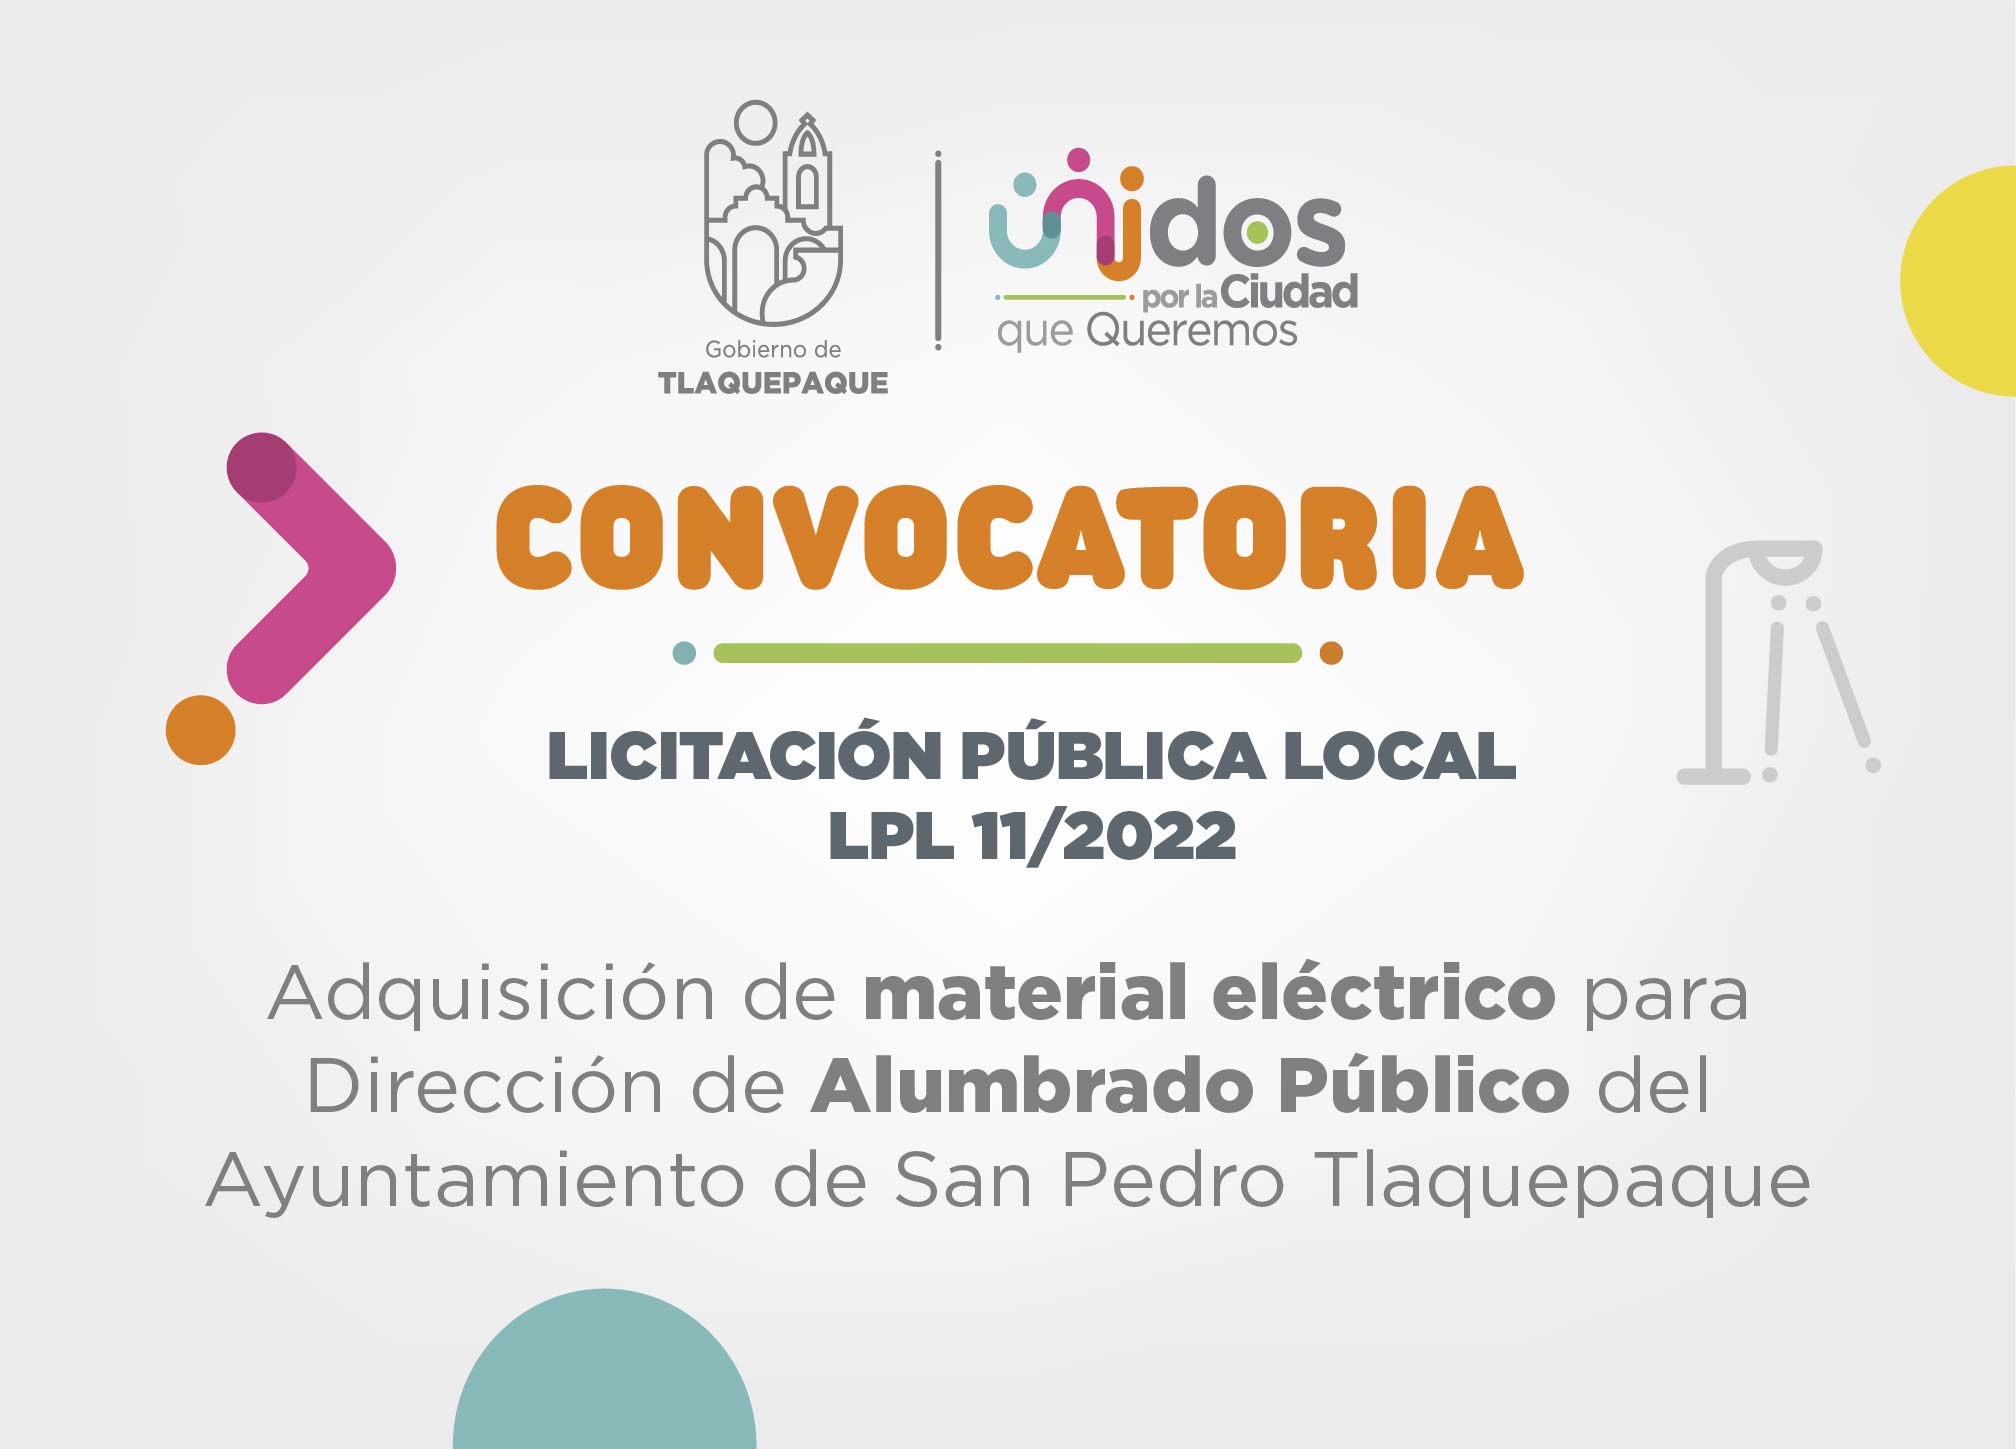 Adquisición de material eléctrico para Dirección de Alumbrado Público del Ayuntamiento de San Pedro Tlaquepaque